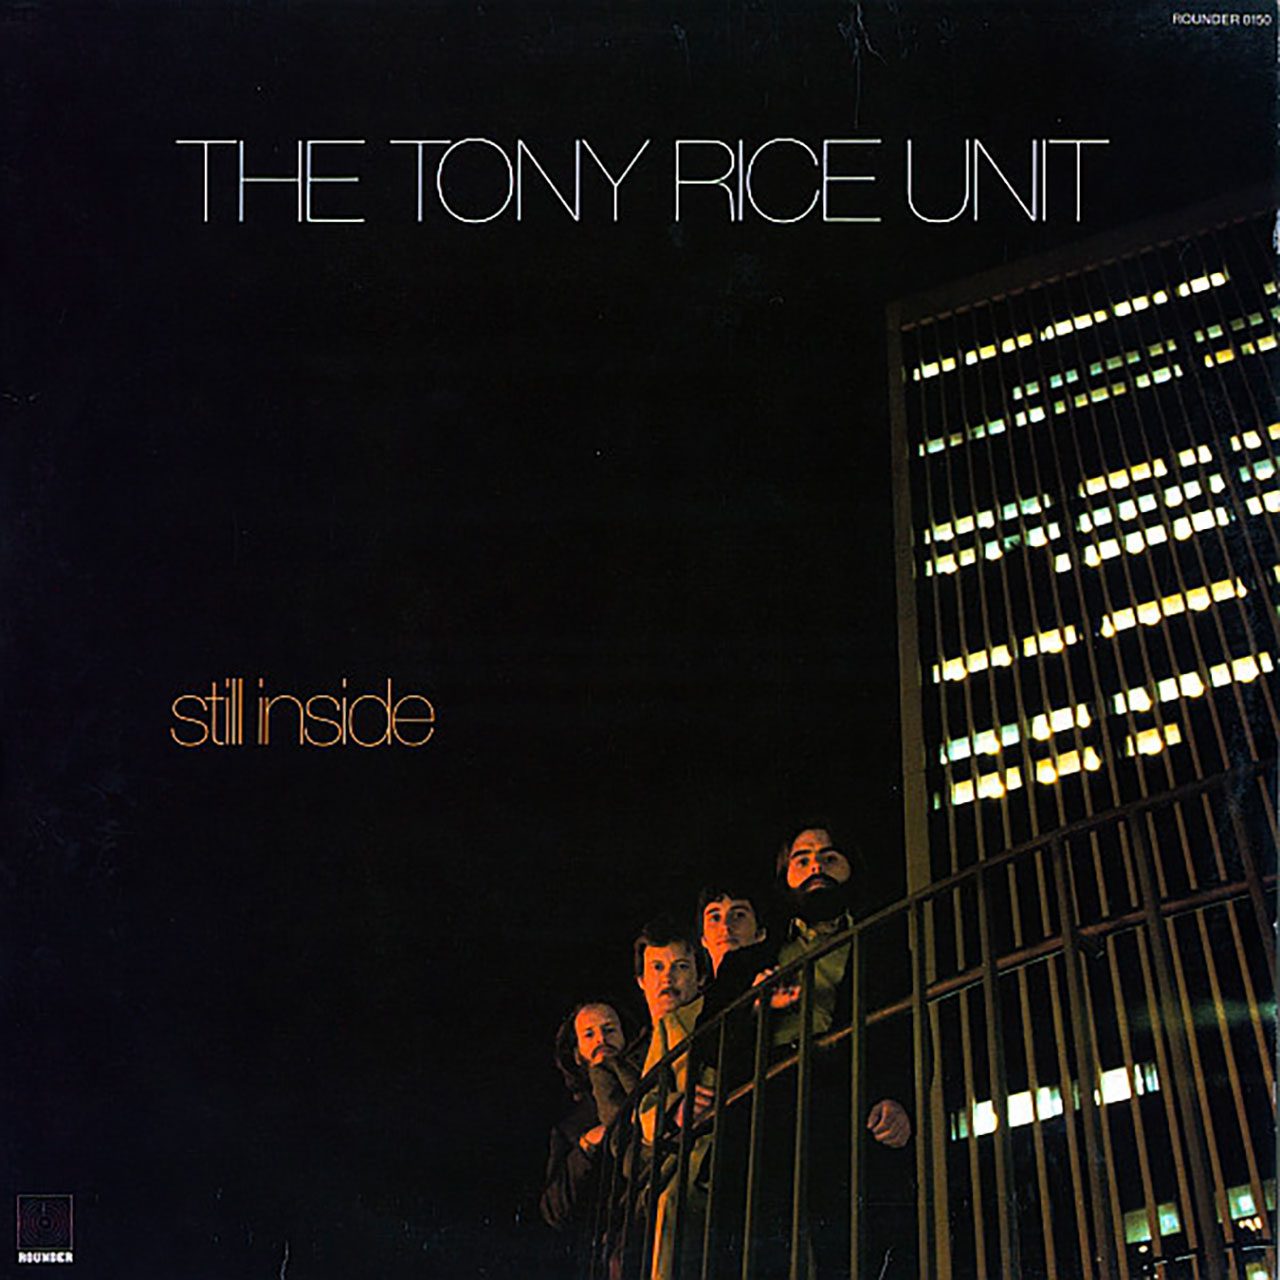 Recensione album della Tony Rice Unit - “Still Inside” a cura di Daniele Bovio, fonte Hi, Folks